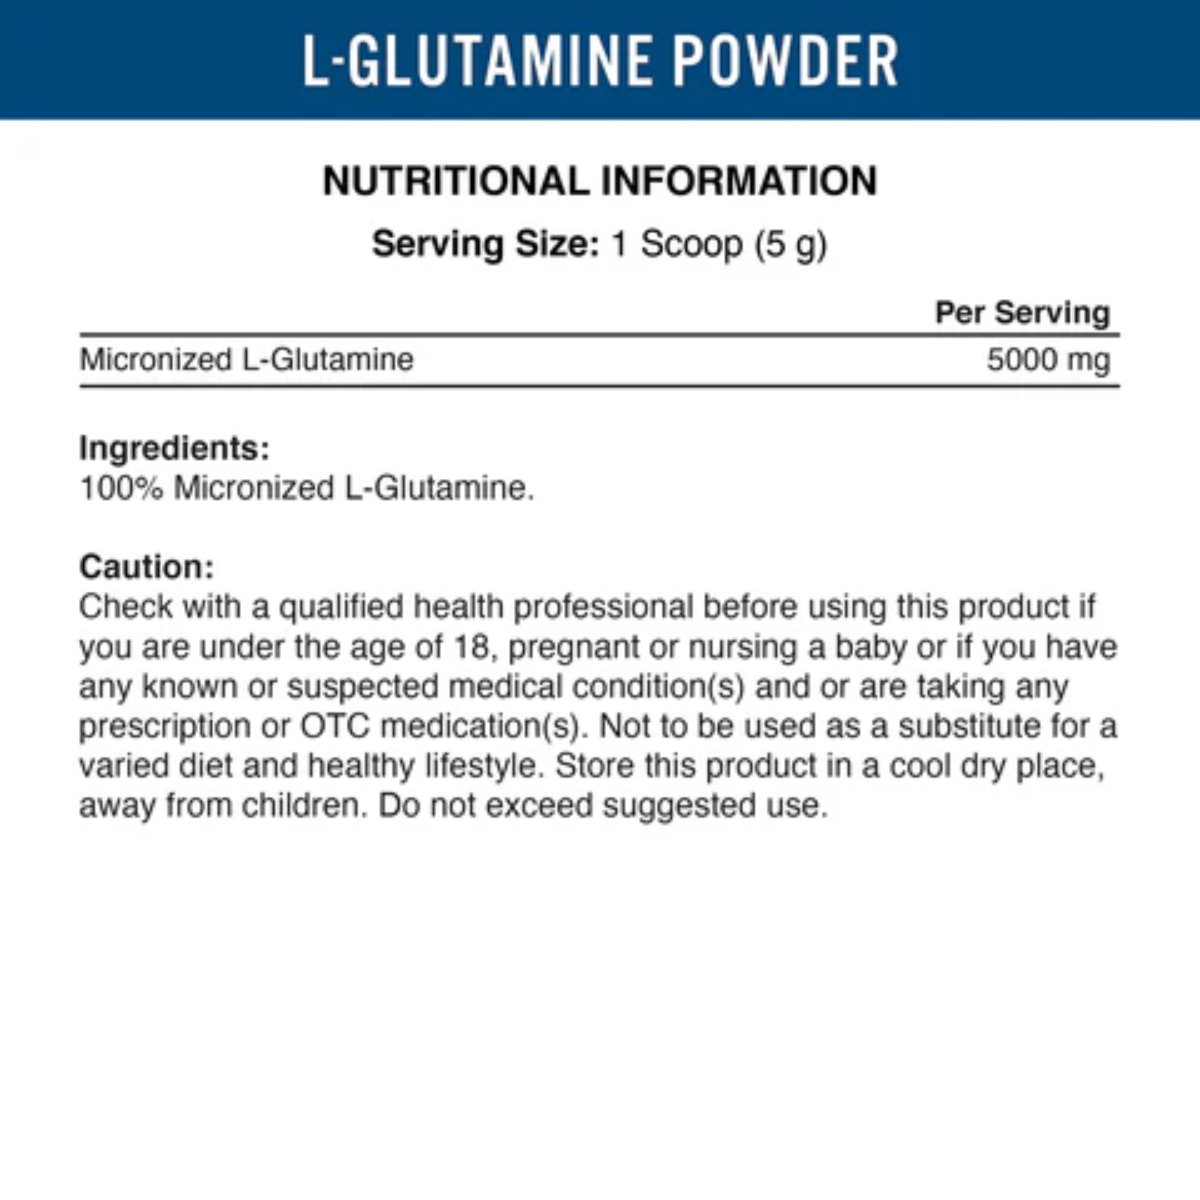 Applied L-Glutamine | Muscle Freak